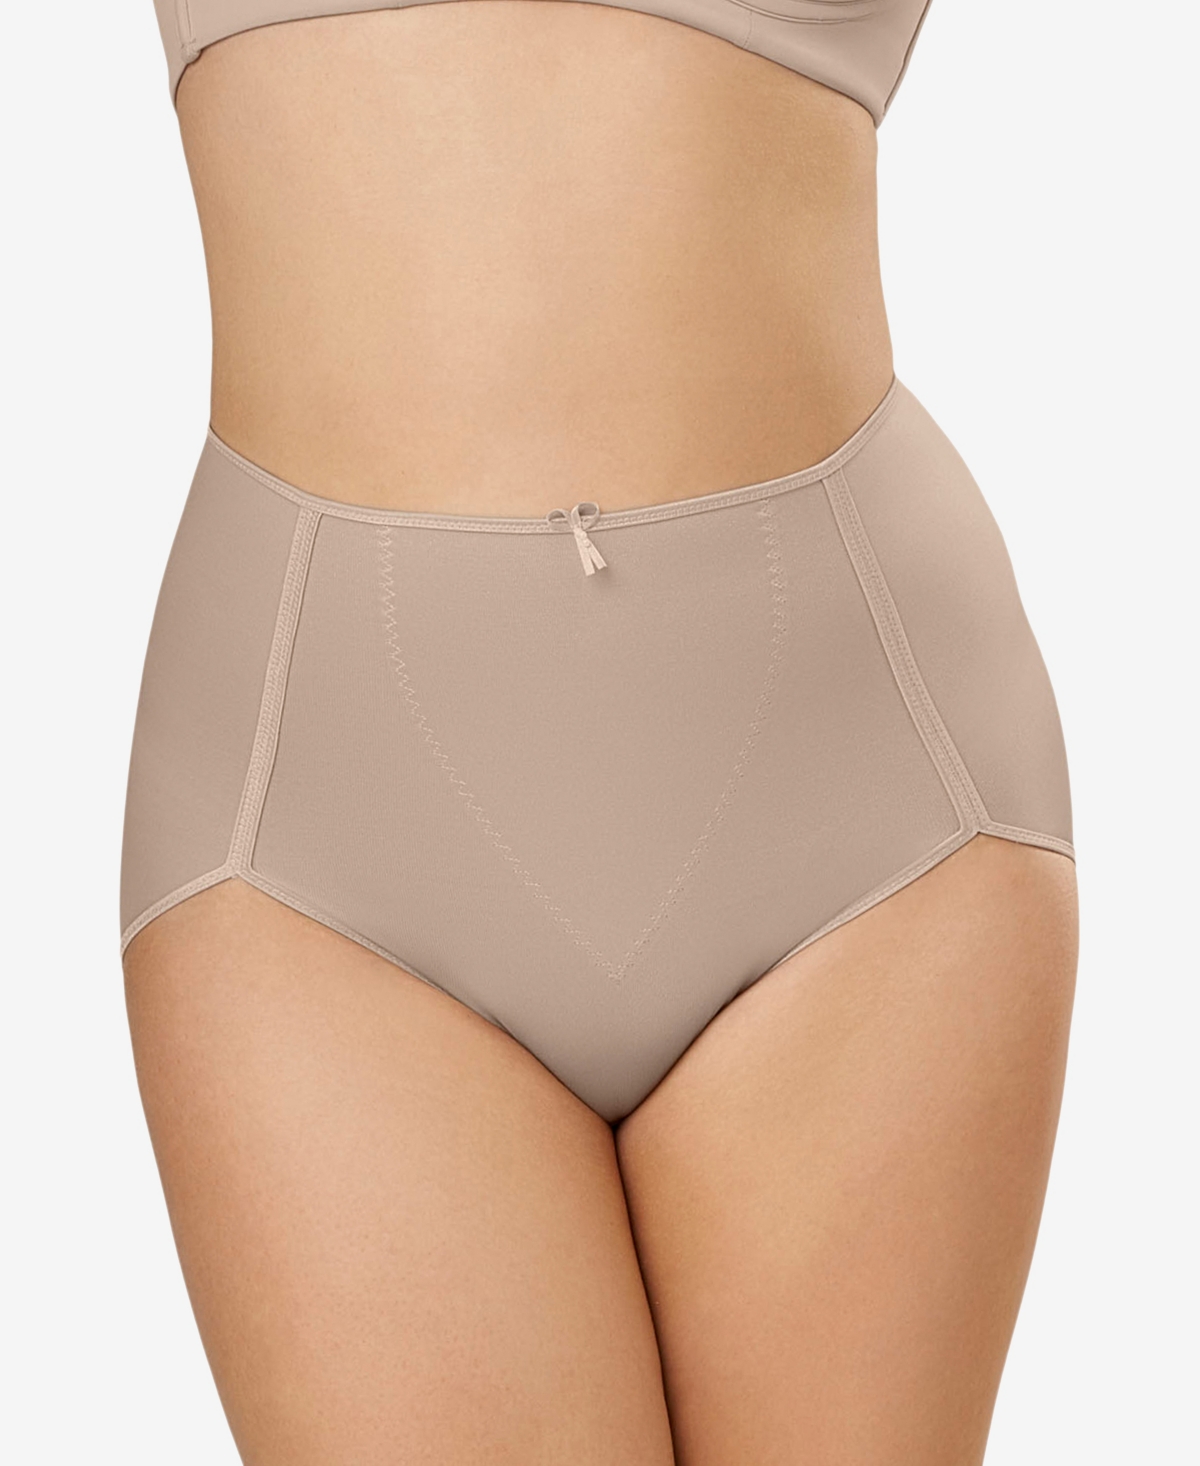 Women's Firm Tummy-Control High-Waist Panty 0243 - Light Beige